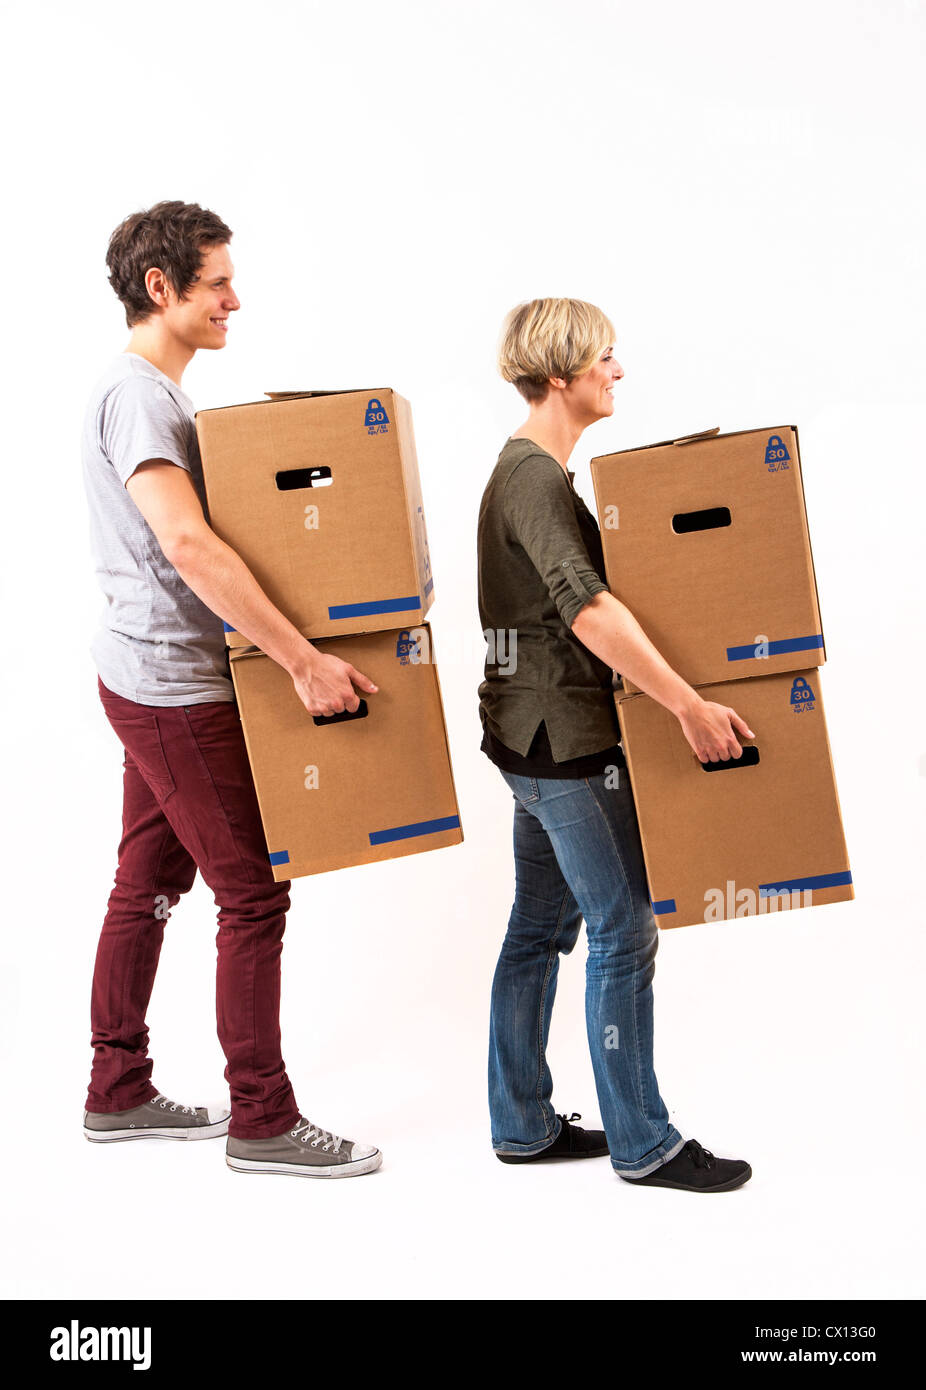 Symbolfoto Umzug, Auszug, umziehen. Junges Paar trägt Umzugskartons. Umzugskisten aus Pappkarton. Stock Photo